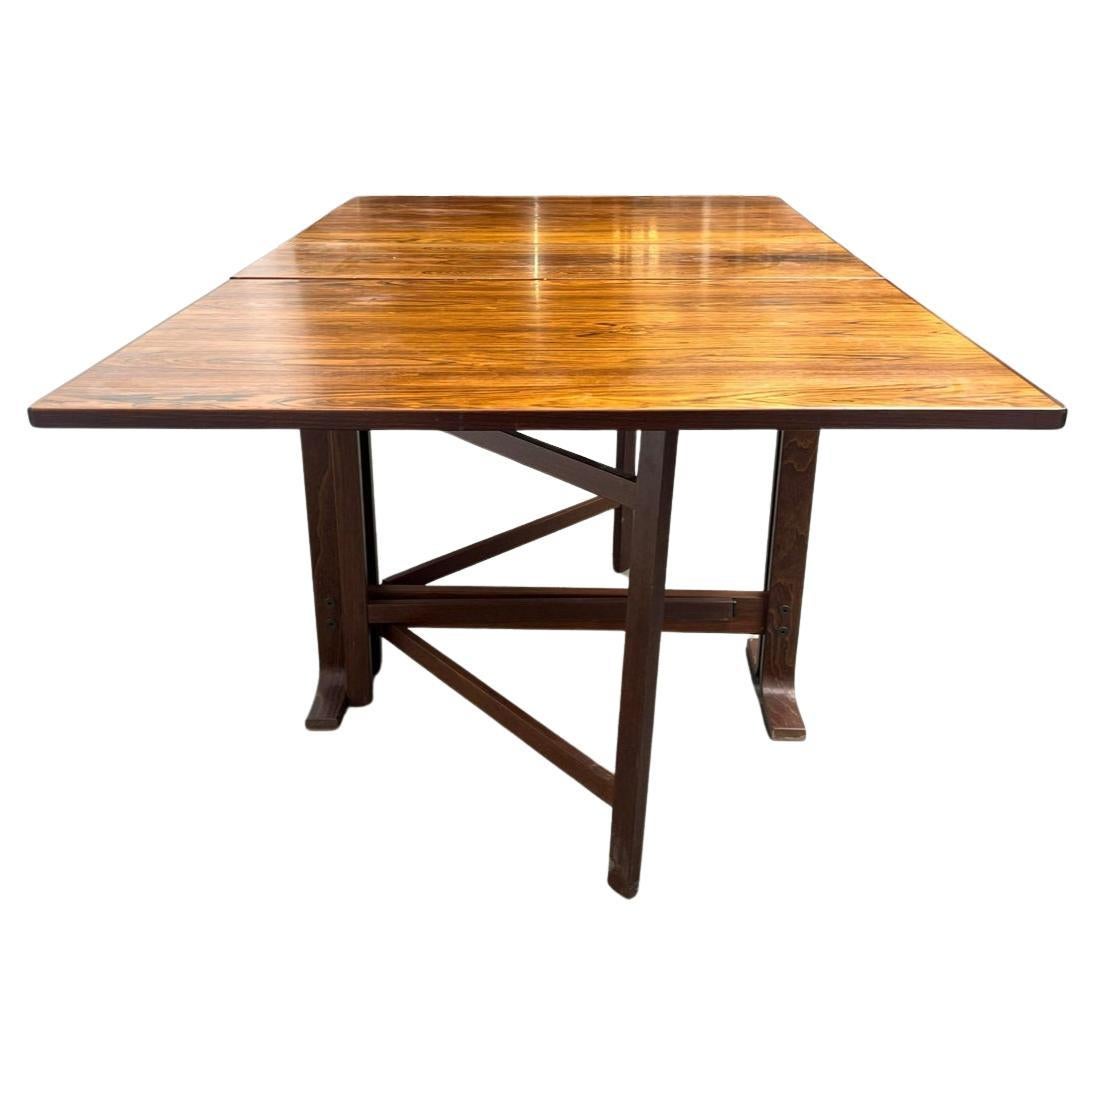 Table de salle à manger pliante en bois de rose, style Bruno Mathsson, modernité danoise du milieu du siècle dernier. Dispose de (2) feuilles tombantes et se replie de manière compacte. La table entièrement ouverte mesure 59